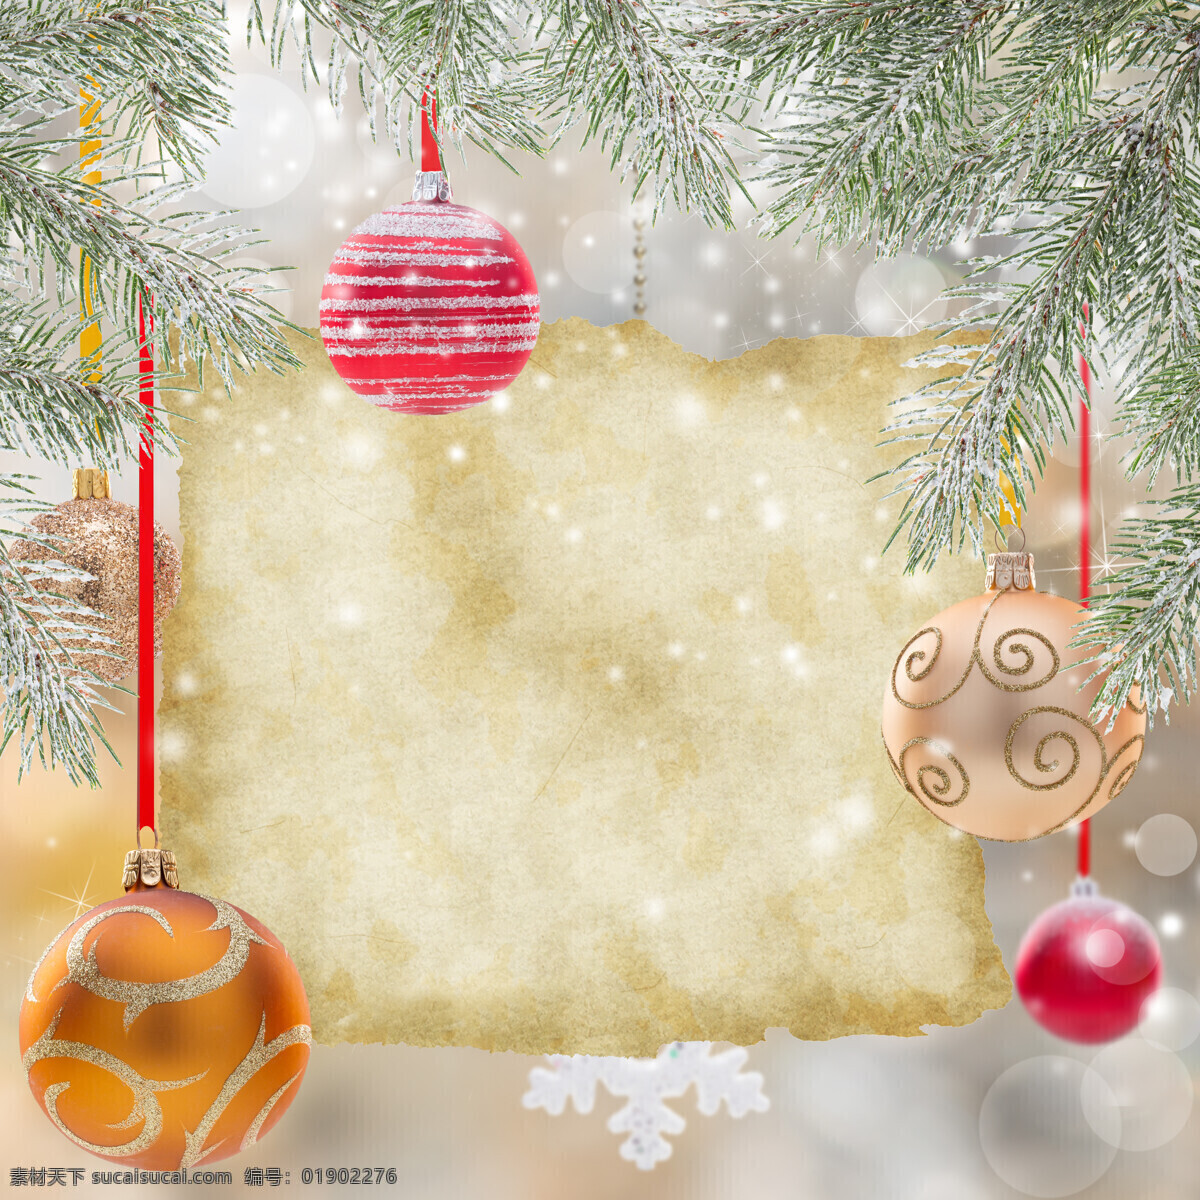 撕 纸 圣诞球 撕纸 雪花 松枝 装饰物 饼干 圣诞节 节日庆典 生活百科